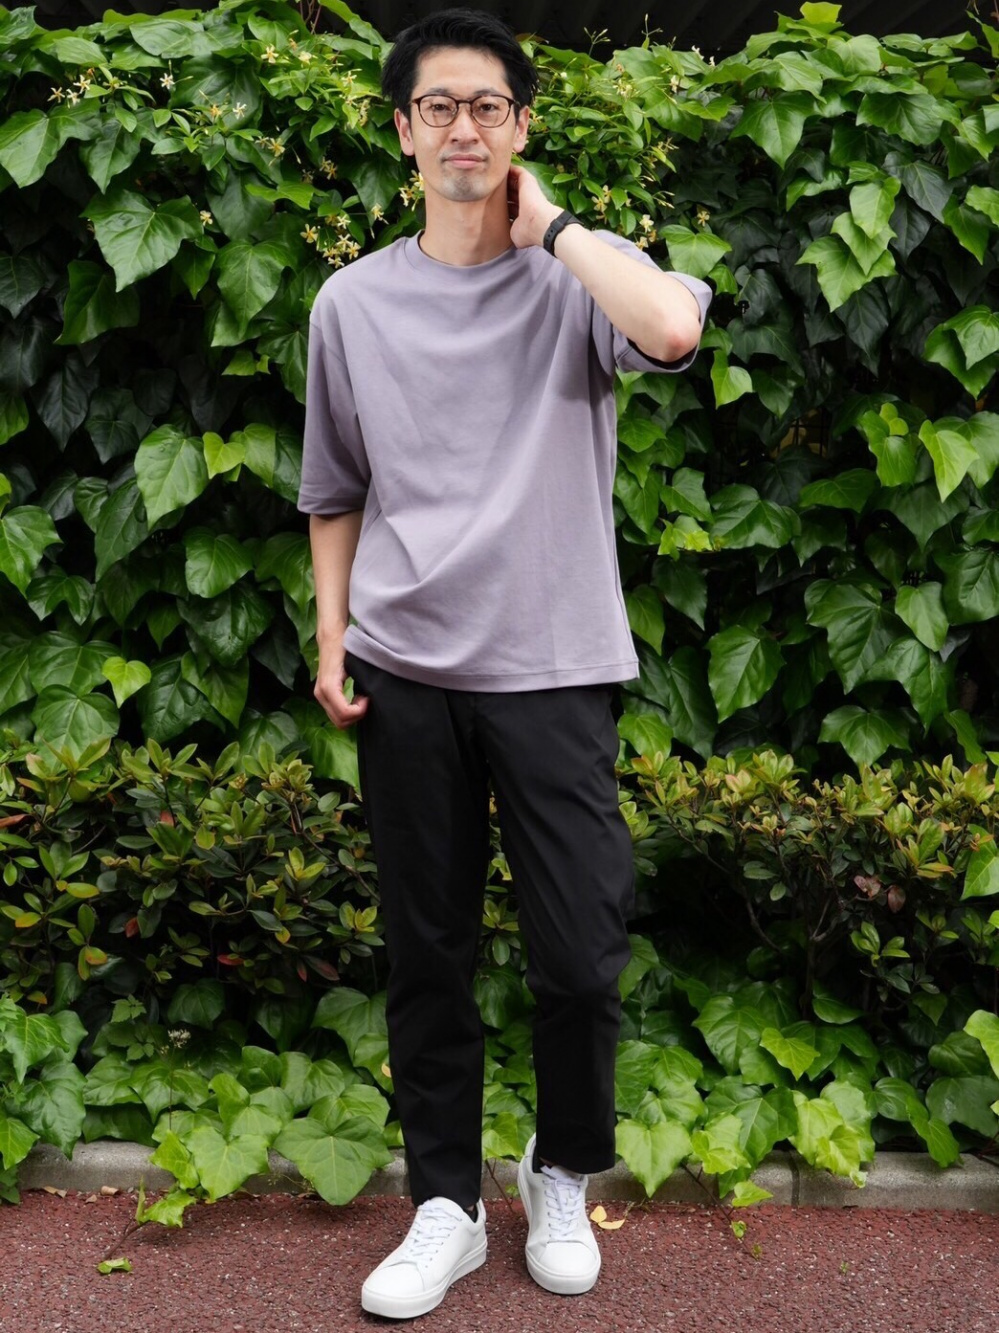 スムースコットンポロシャツ（半袖）、感動イージーパンツ （丈標準72～78cm）」の着用コーディネート| ユニクロ